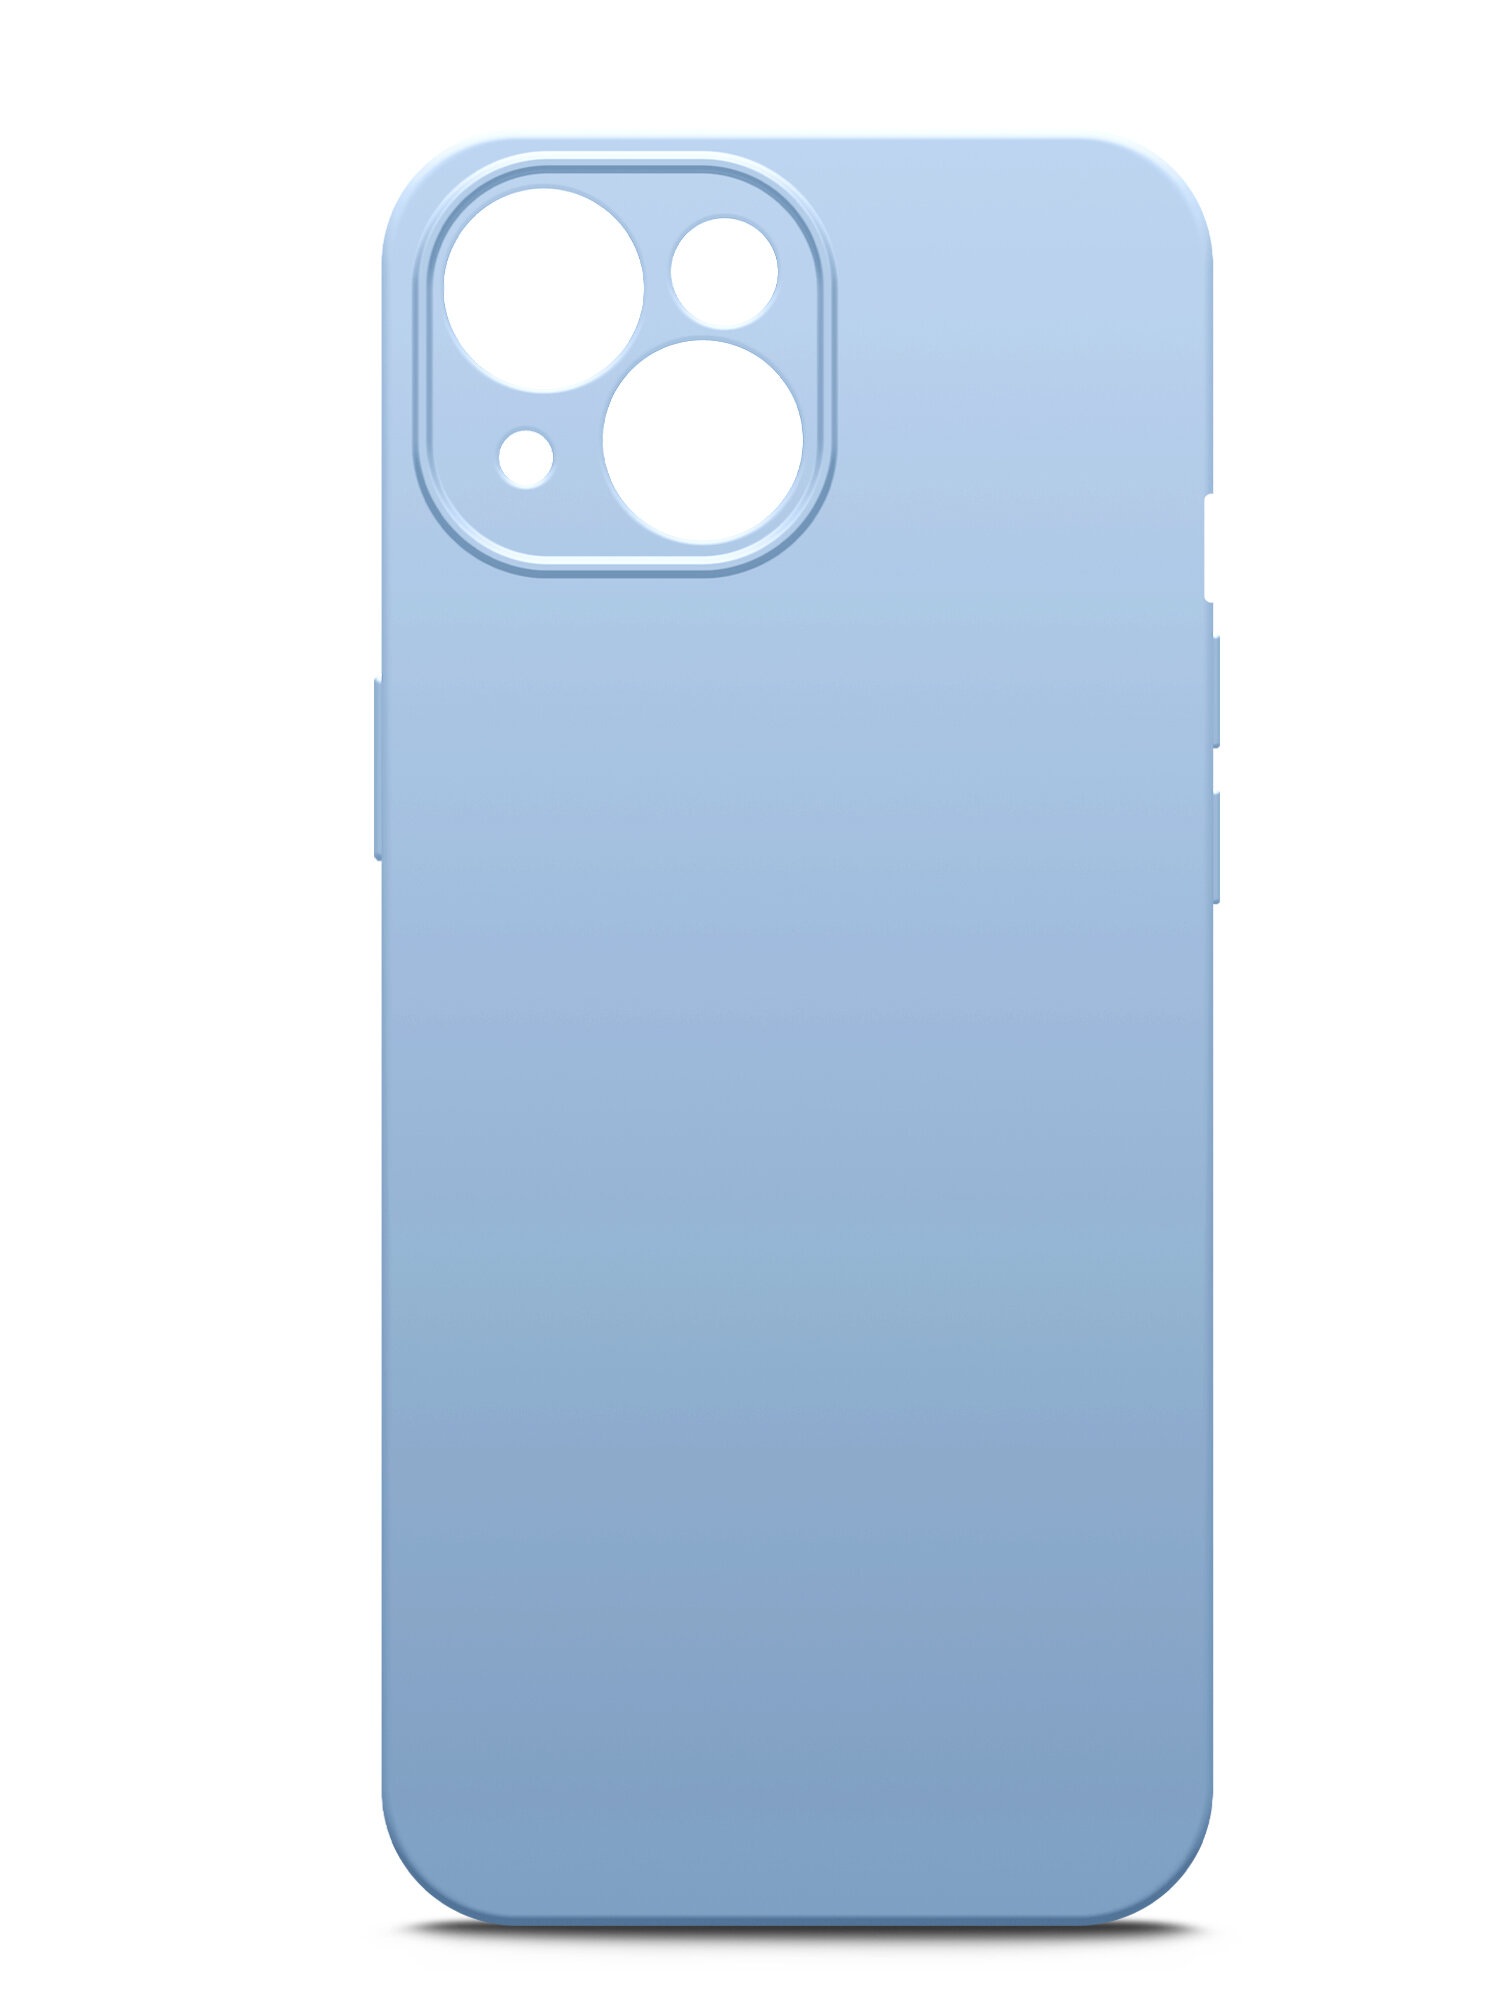 Чехол на Apple iPhone 15 (Эпл Айфон 15), голубой силиконовый с защитной подкладкой голубой из микрофибры Microfiber Case, Brozo